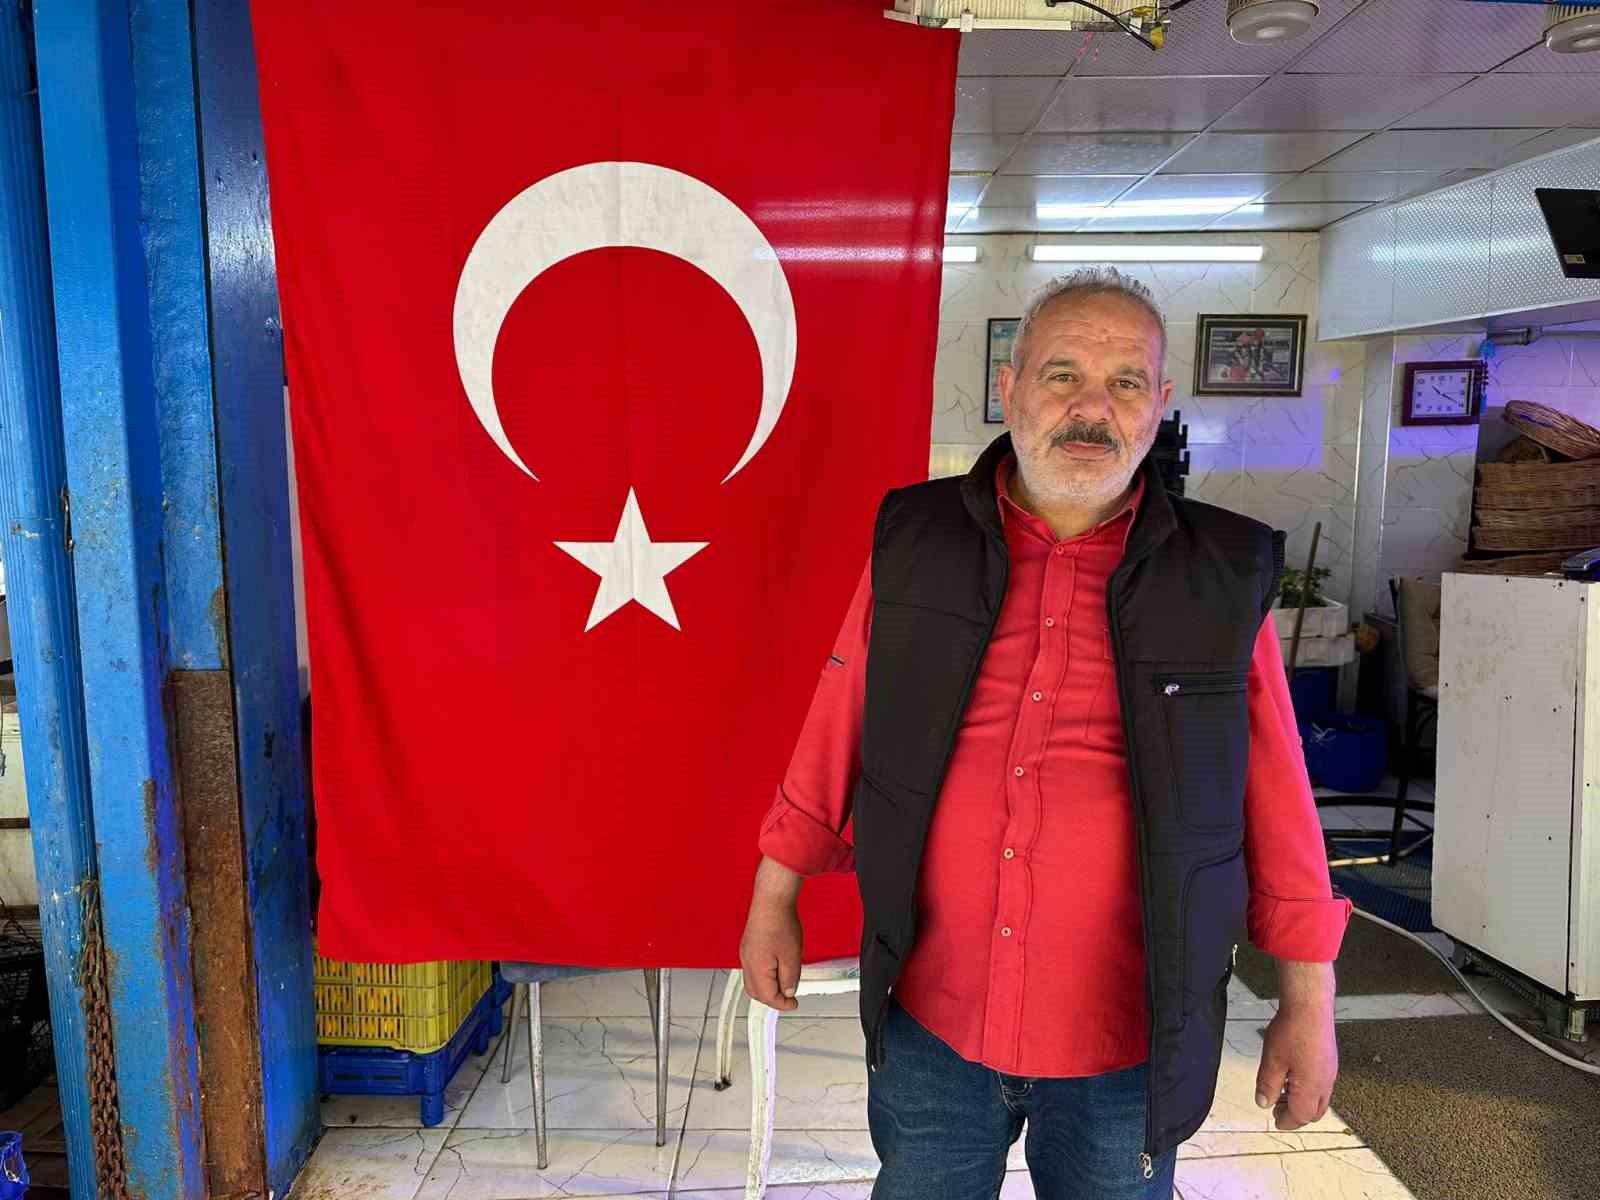 19 Mayıs’ta dükkânlar Türk bayraklarıyla donatıldı